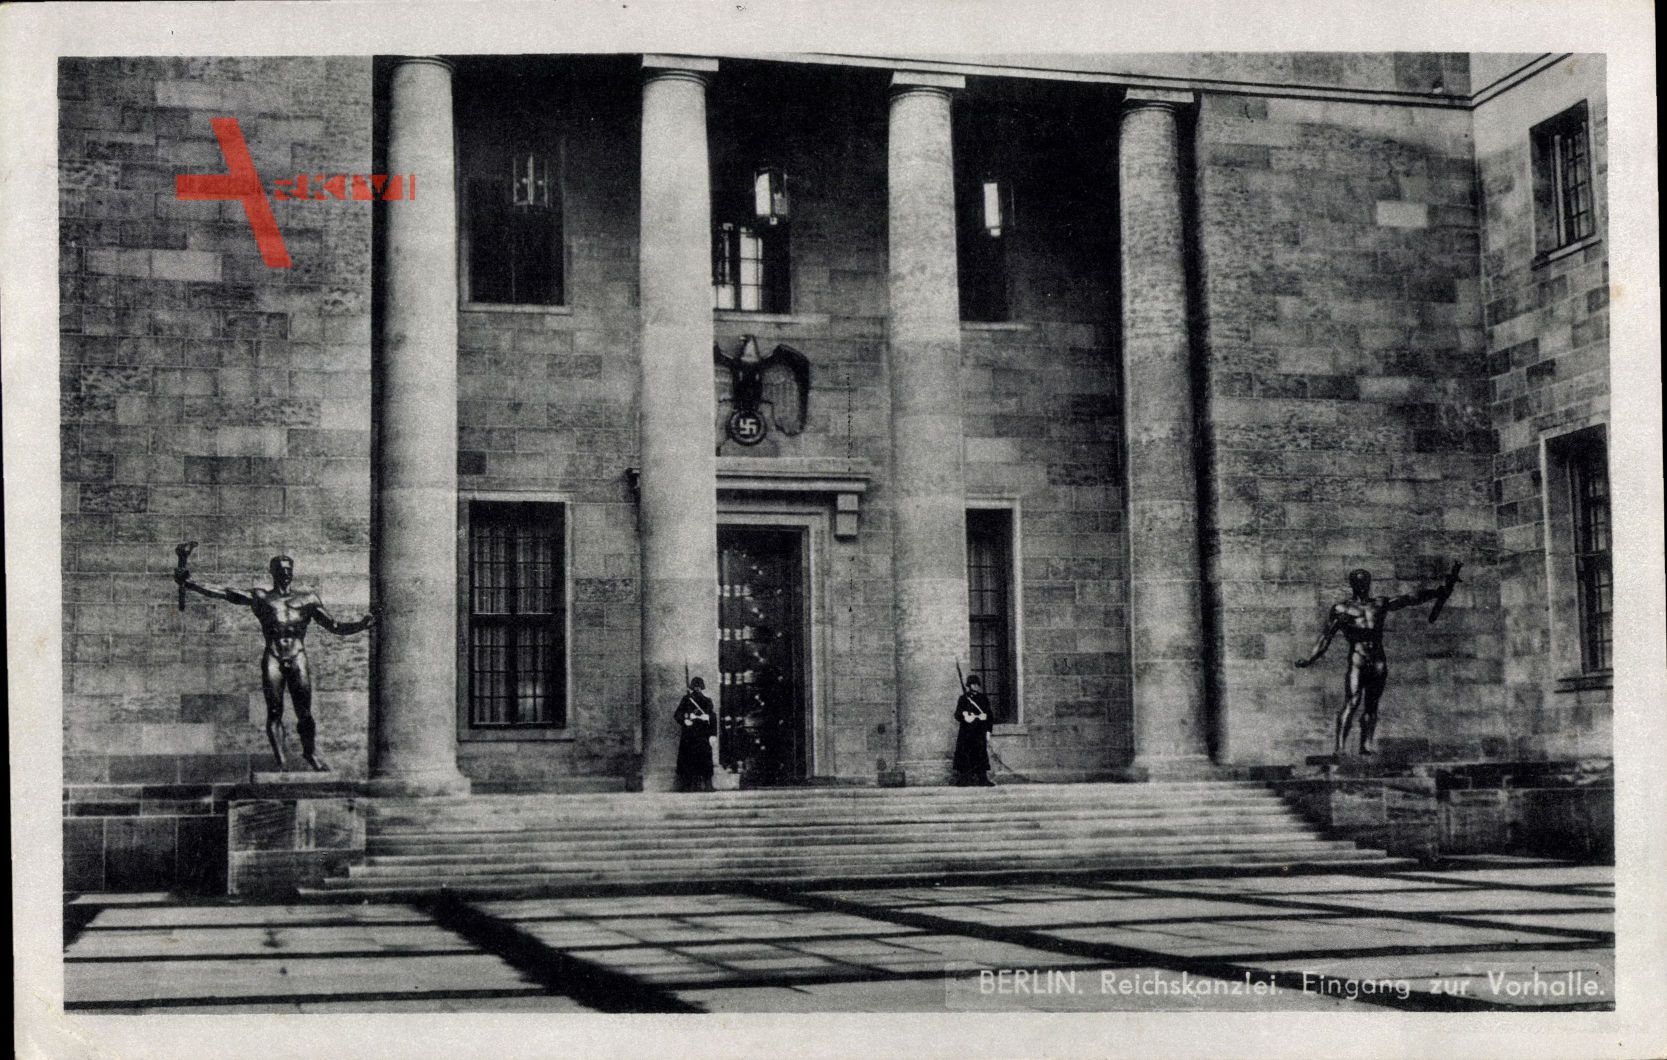 Berlin Mitte, Reichskanzlei, Eingang zur Vorhalle, Wachen